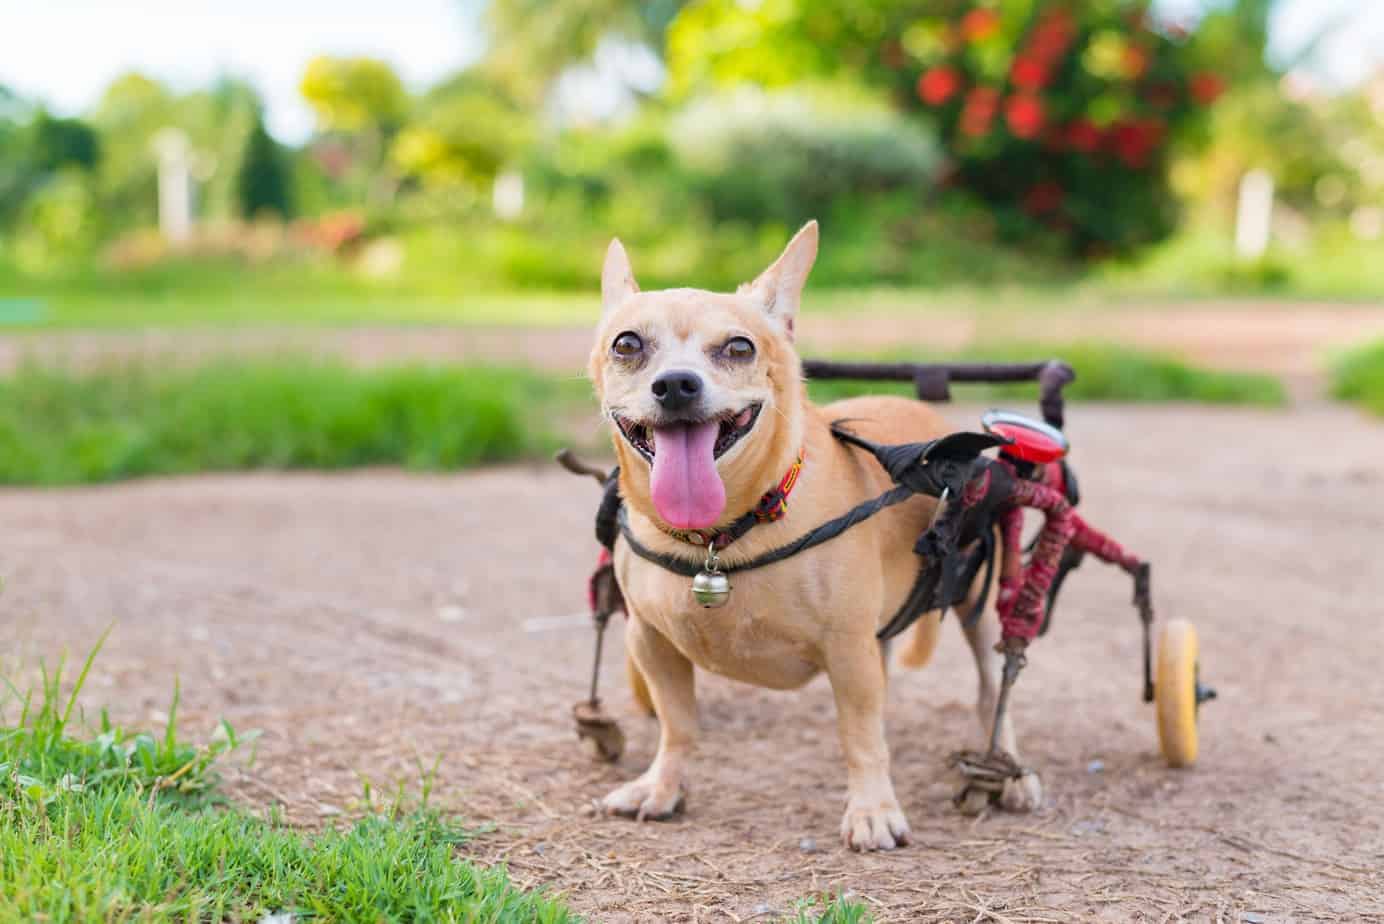 Disabled dog Make for vision, hearing loss